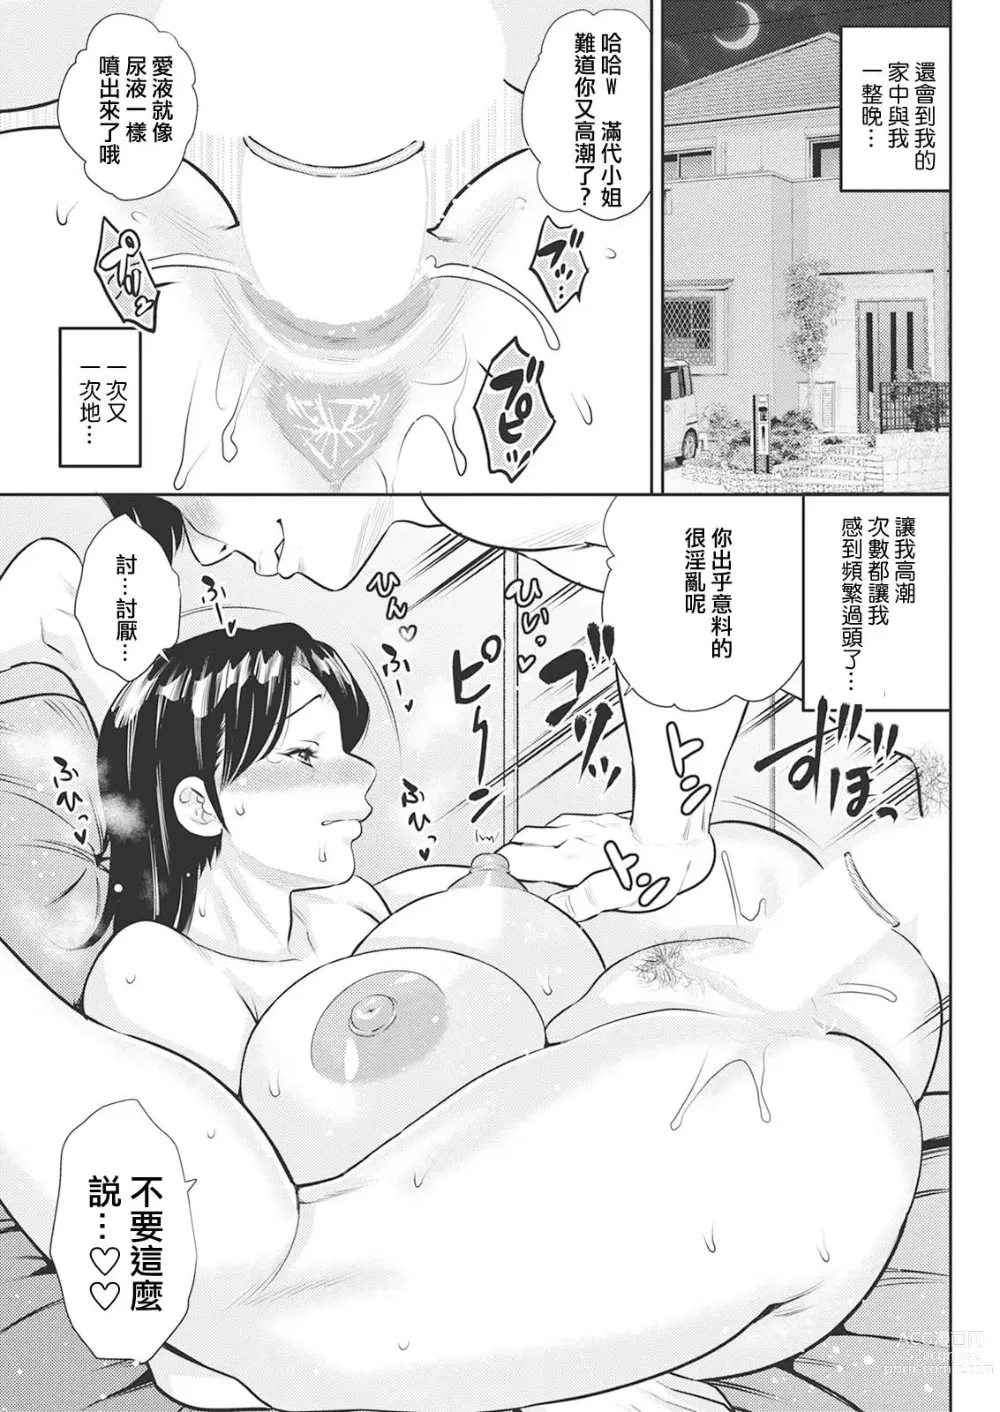 Page 13 of manga Michiyo-san no Hiasobi Zenpen